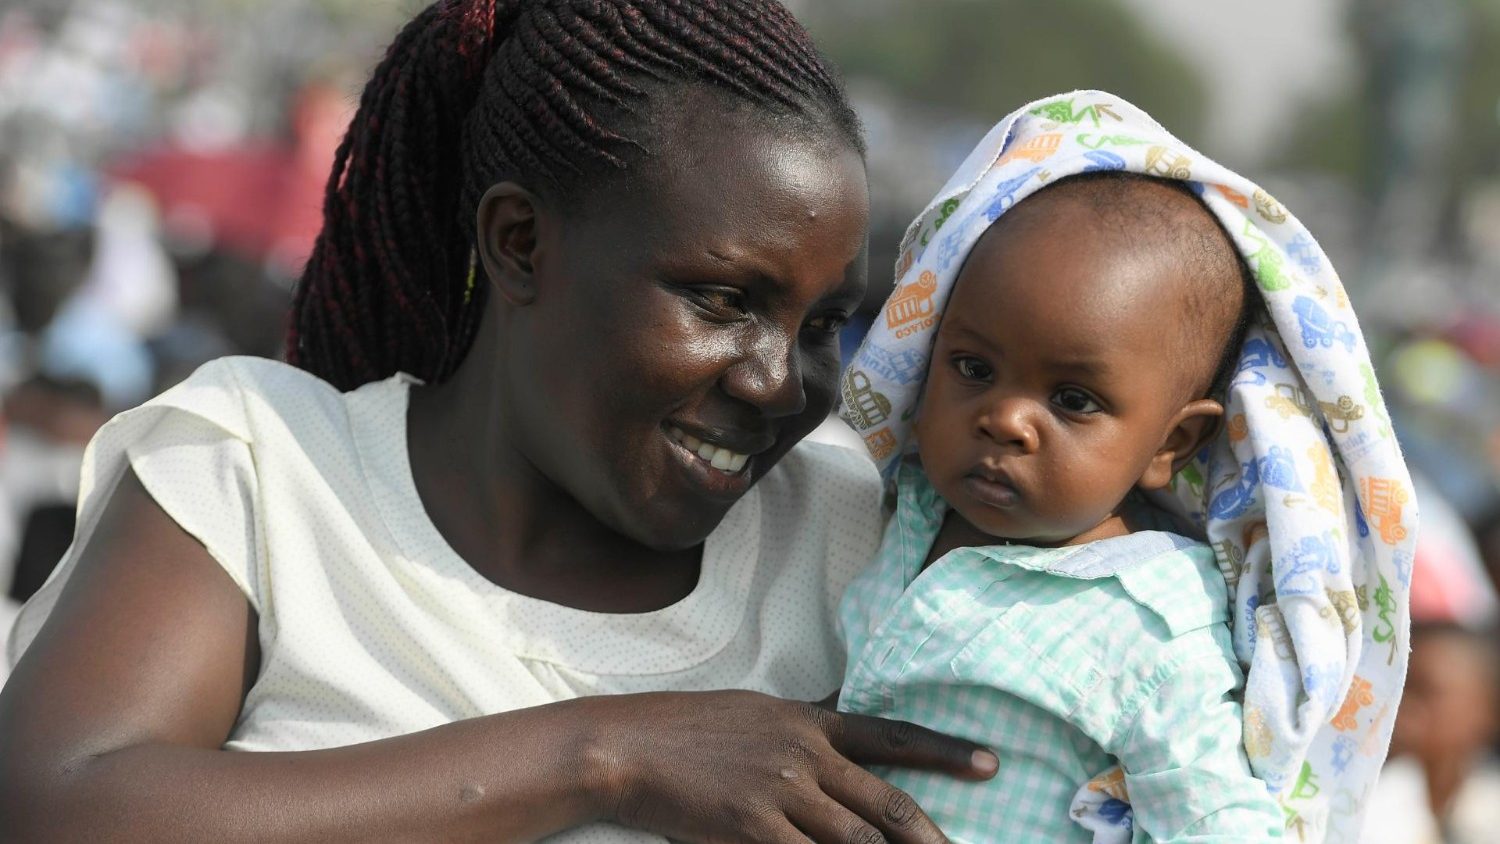 Папа — народу Южного Судана: научимся превращать страдания в надежду